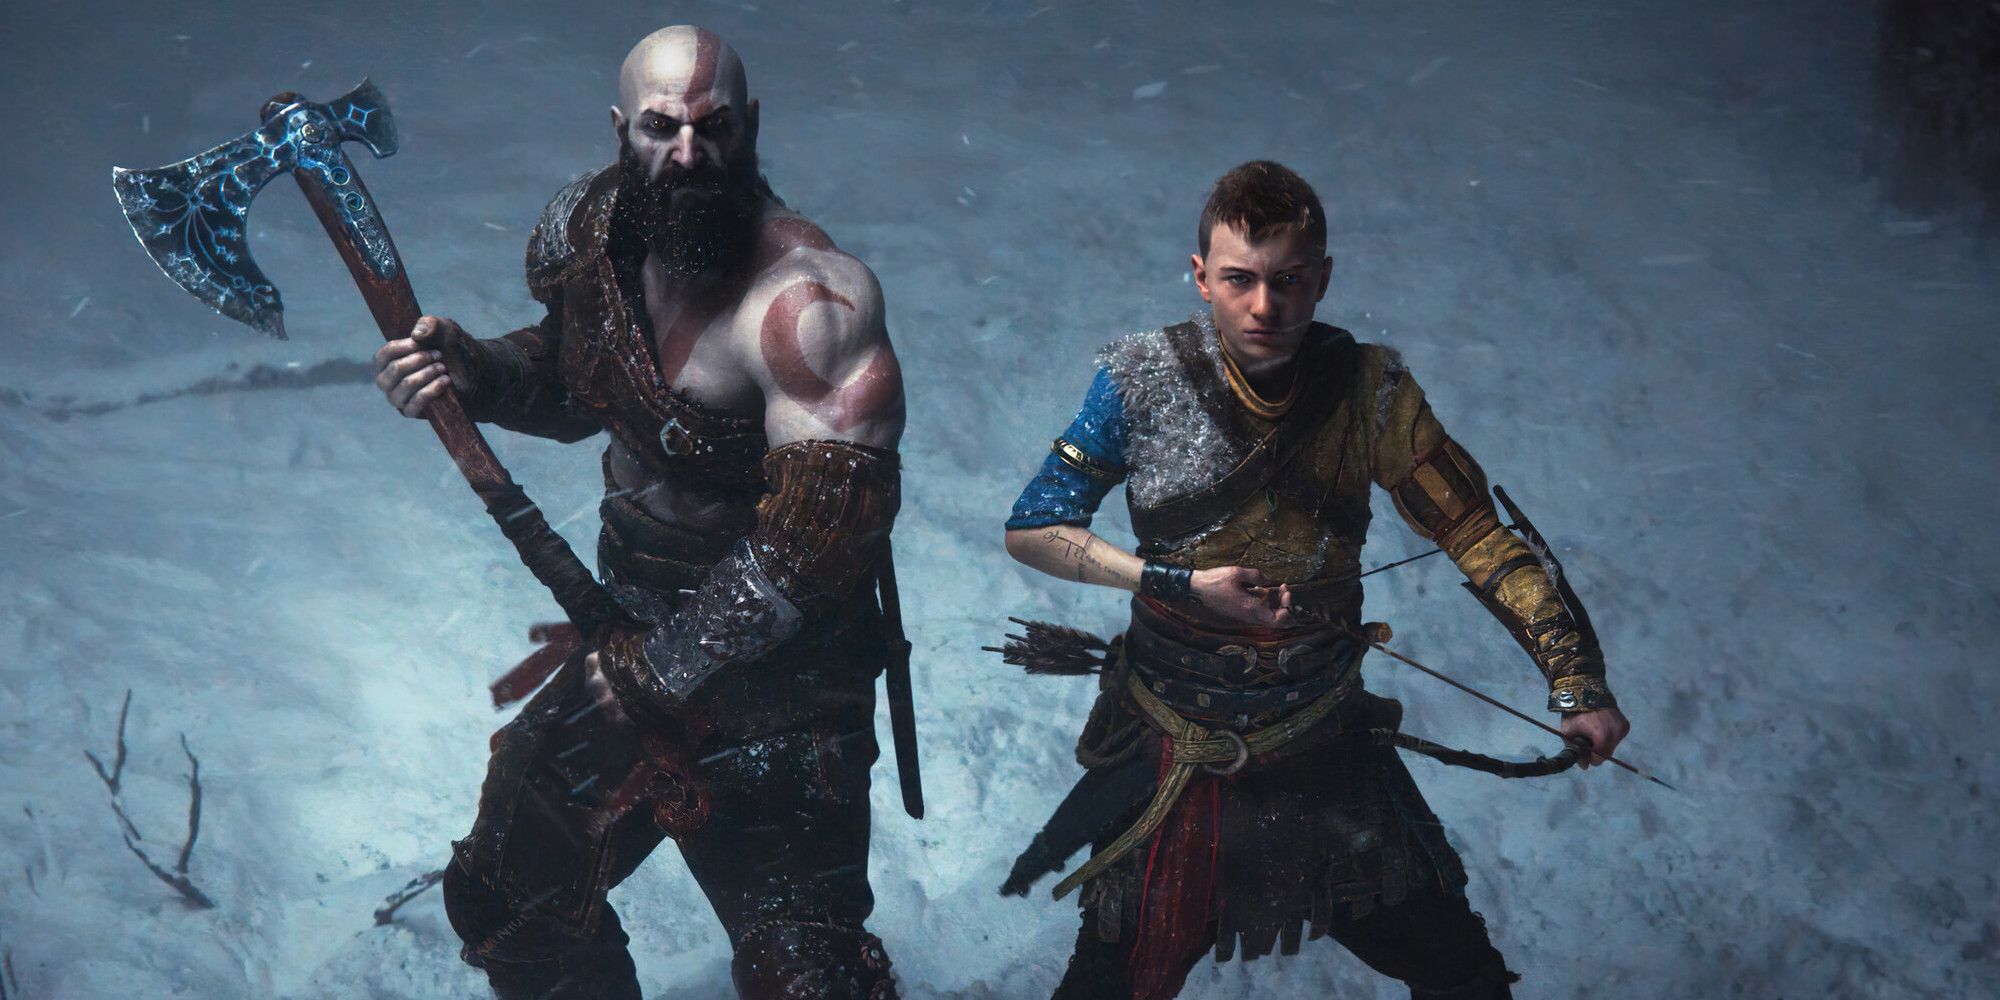 God of War Kratos and Atreus pose